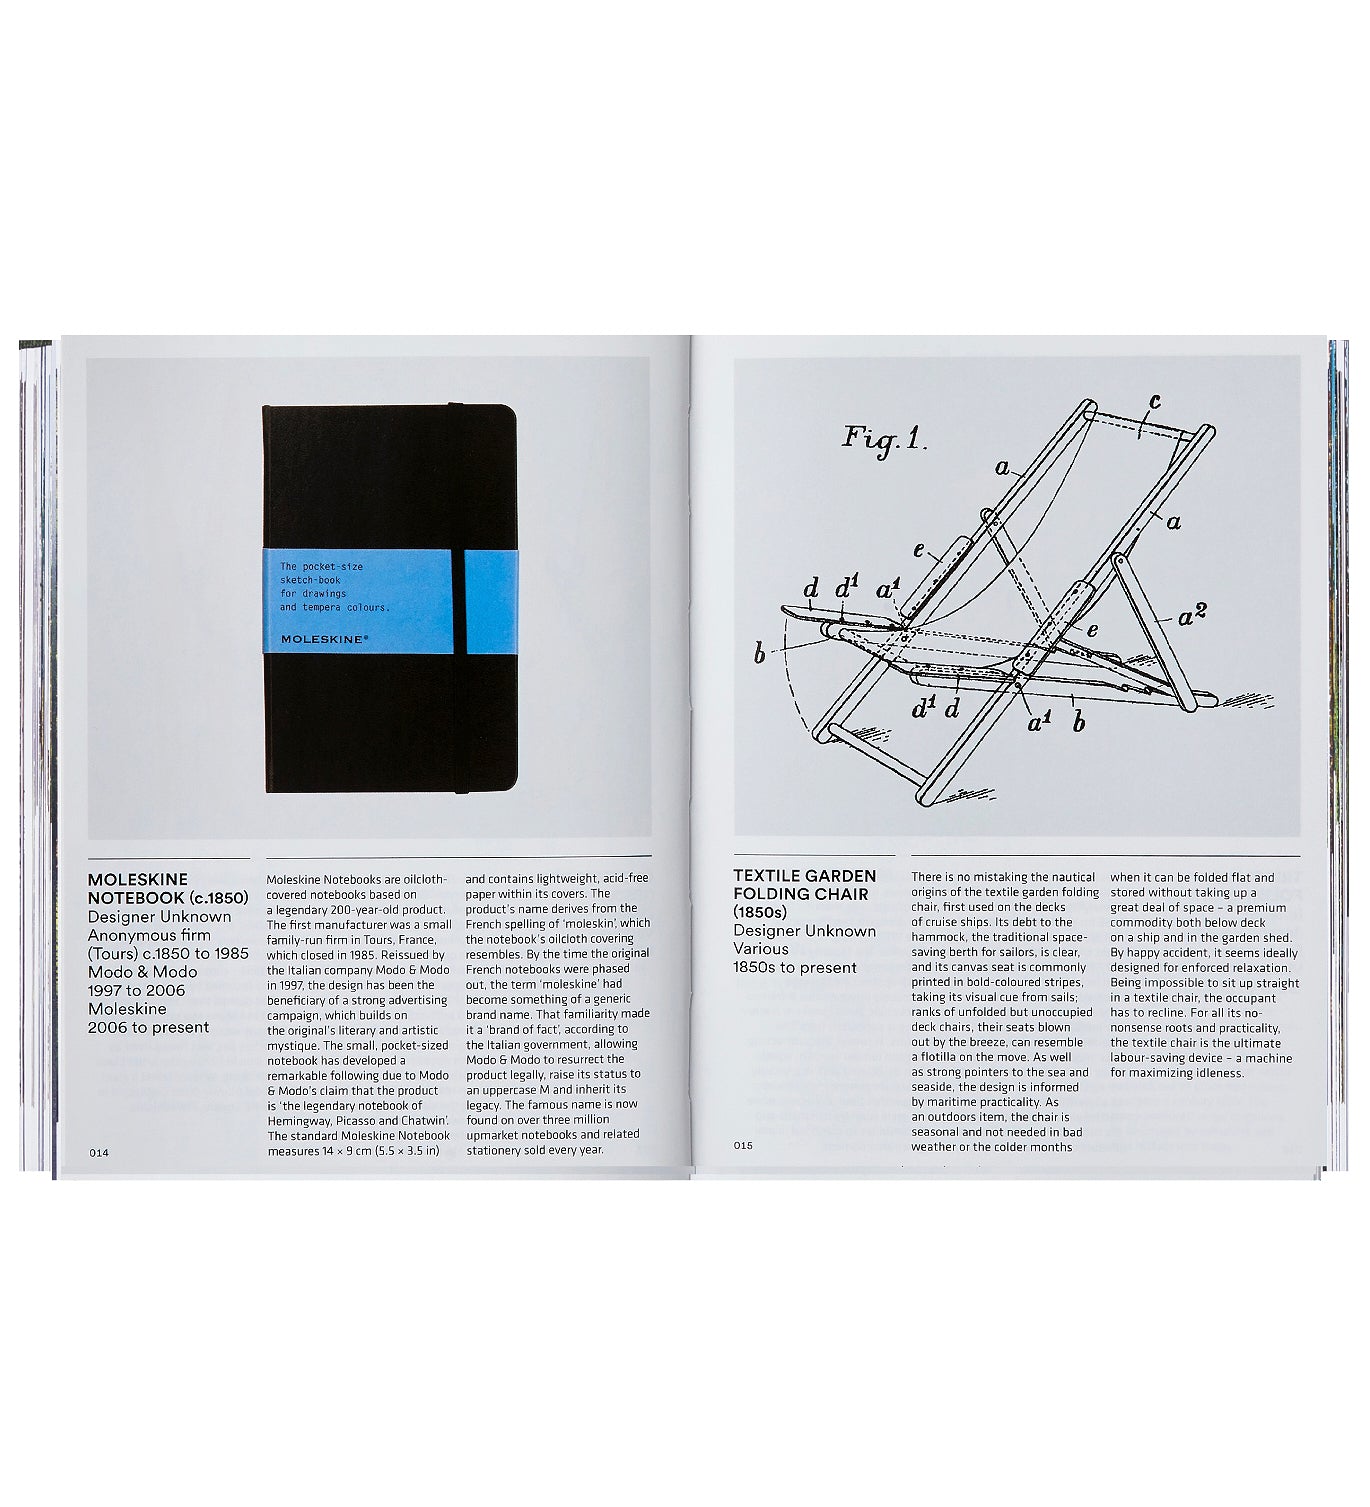 "Le livre de design", éditeurs Phaidon